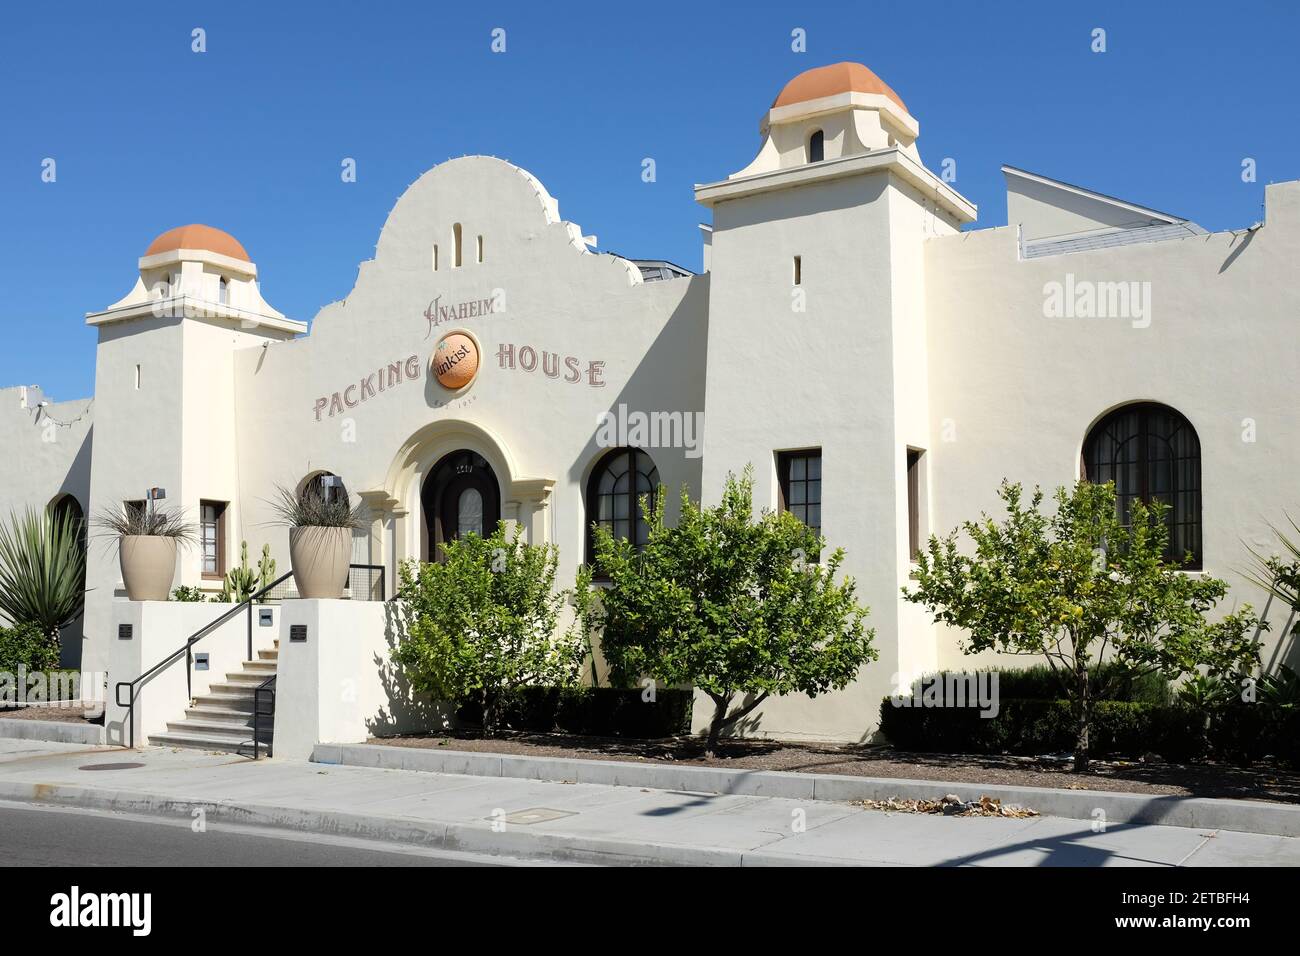 ANAHEIM, KALIFORNIEN - 1 MAR 2021: Die Anaheim Packing House Gourmet-Food-Halle in, dass zusammen mit dem Packard-Gebäude, und ein Bauernmarkt, bilden ein Stockfoto